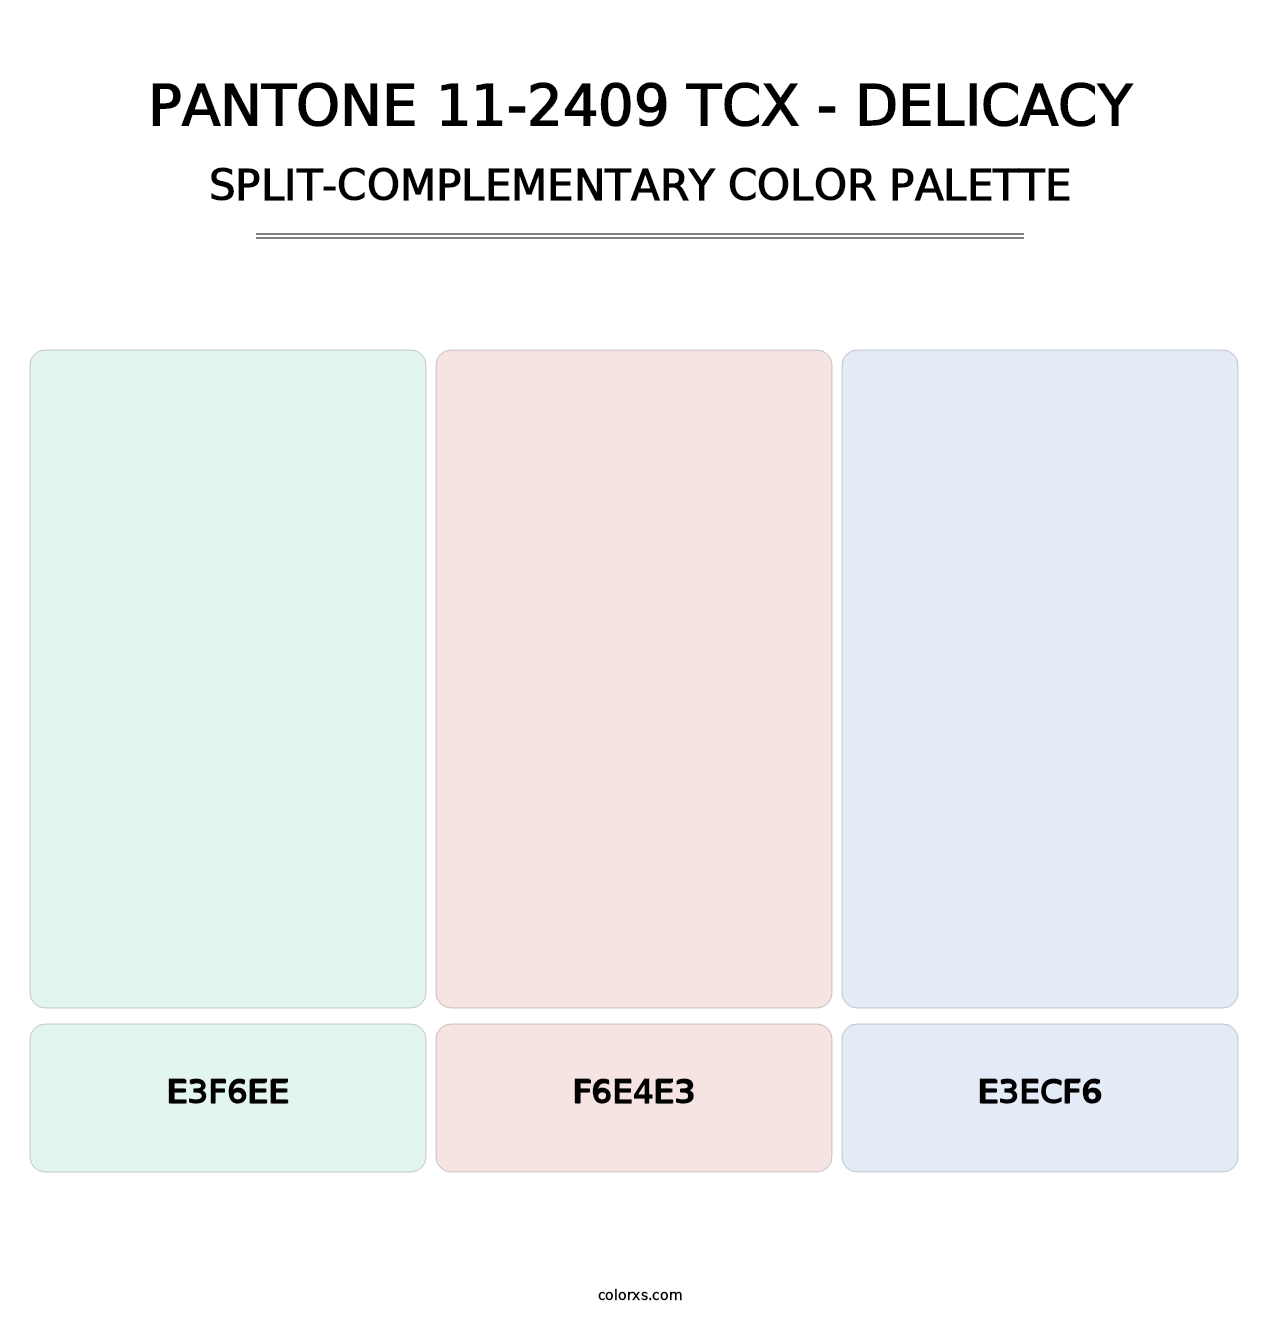 PANTONE 11-2409 TCX - Delicacy - Split-Complementary Color Palette